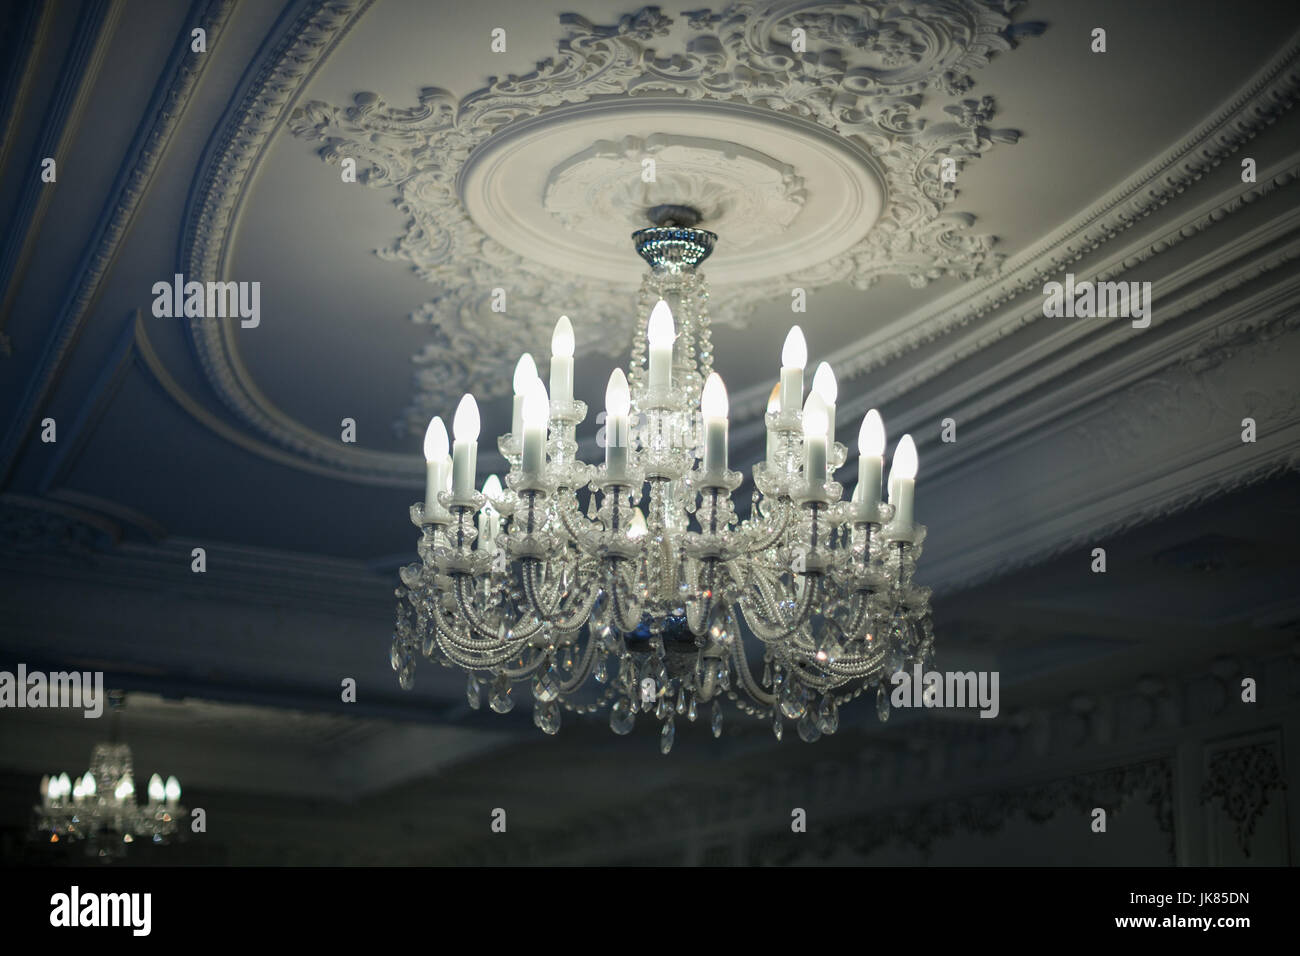 Bellissimo ed antico lampadario di cristallo pende dal soffitto nelle ombre Foto Stock